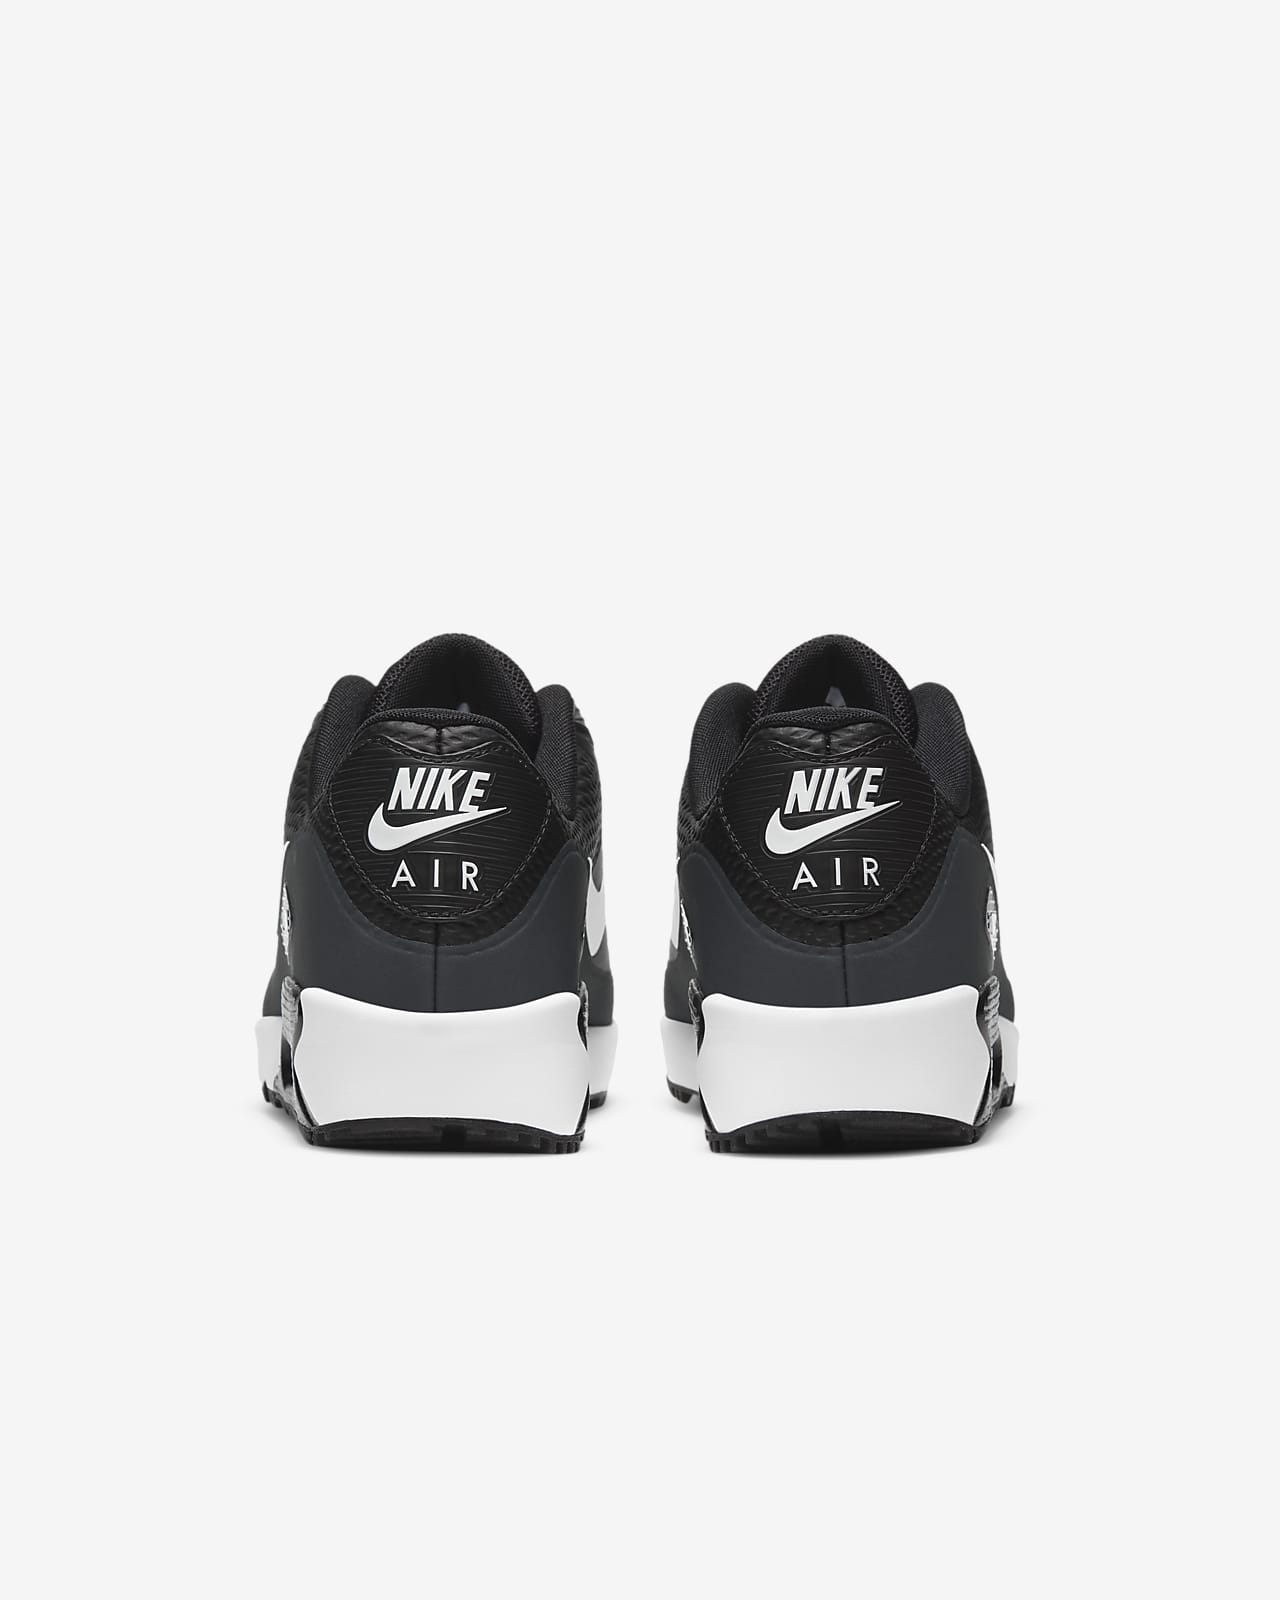  Nike Air Max 90 GTX Zapatos para hombre, Negro/Tour